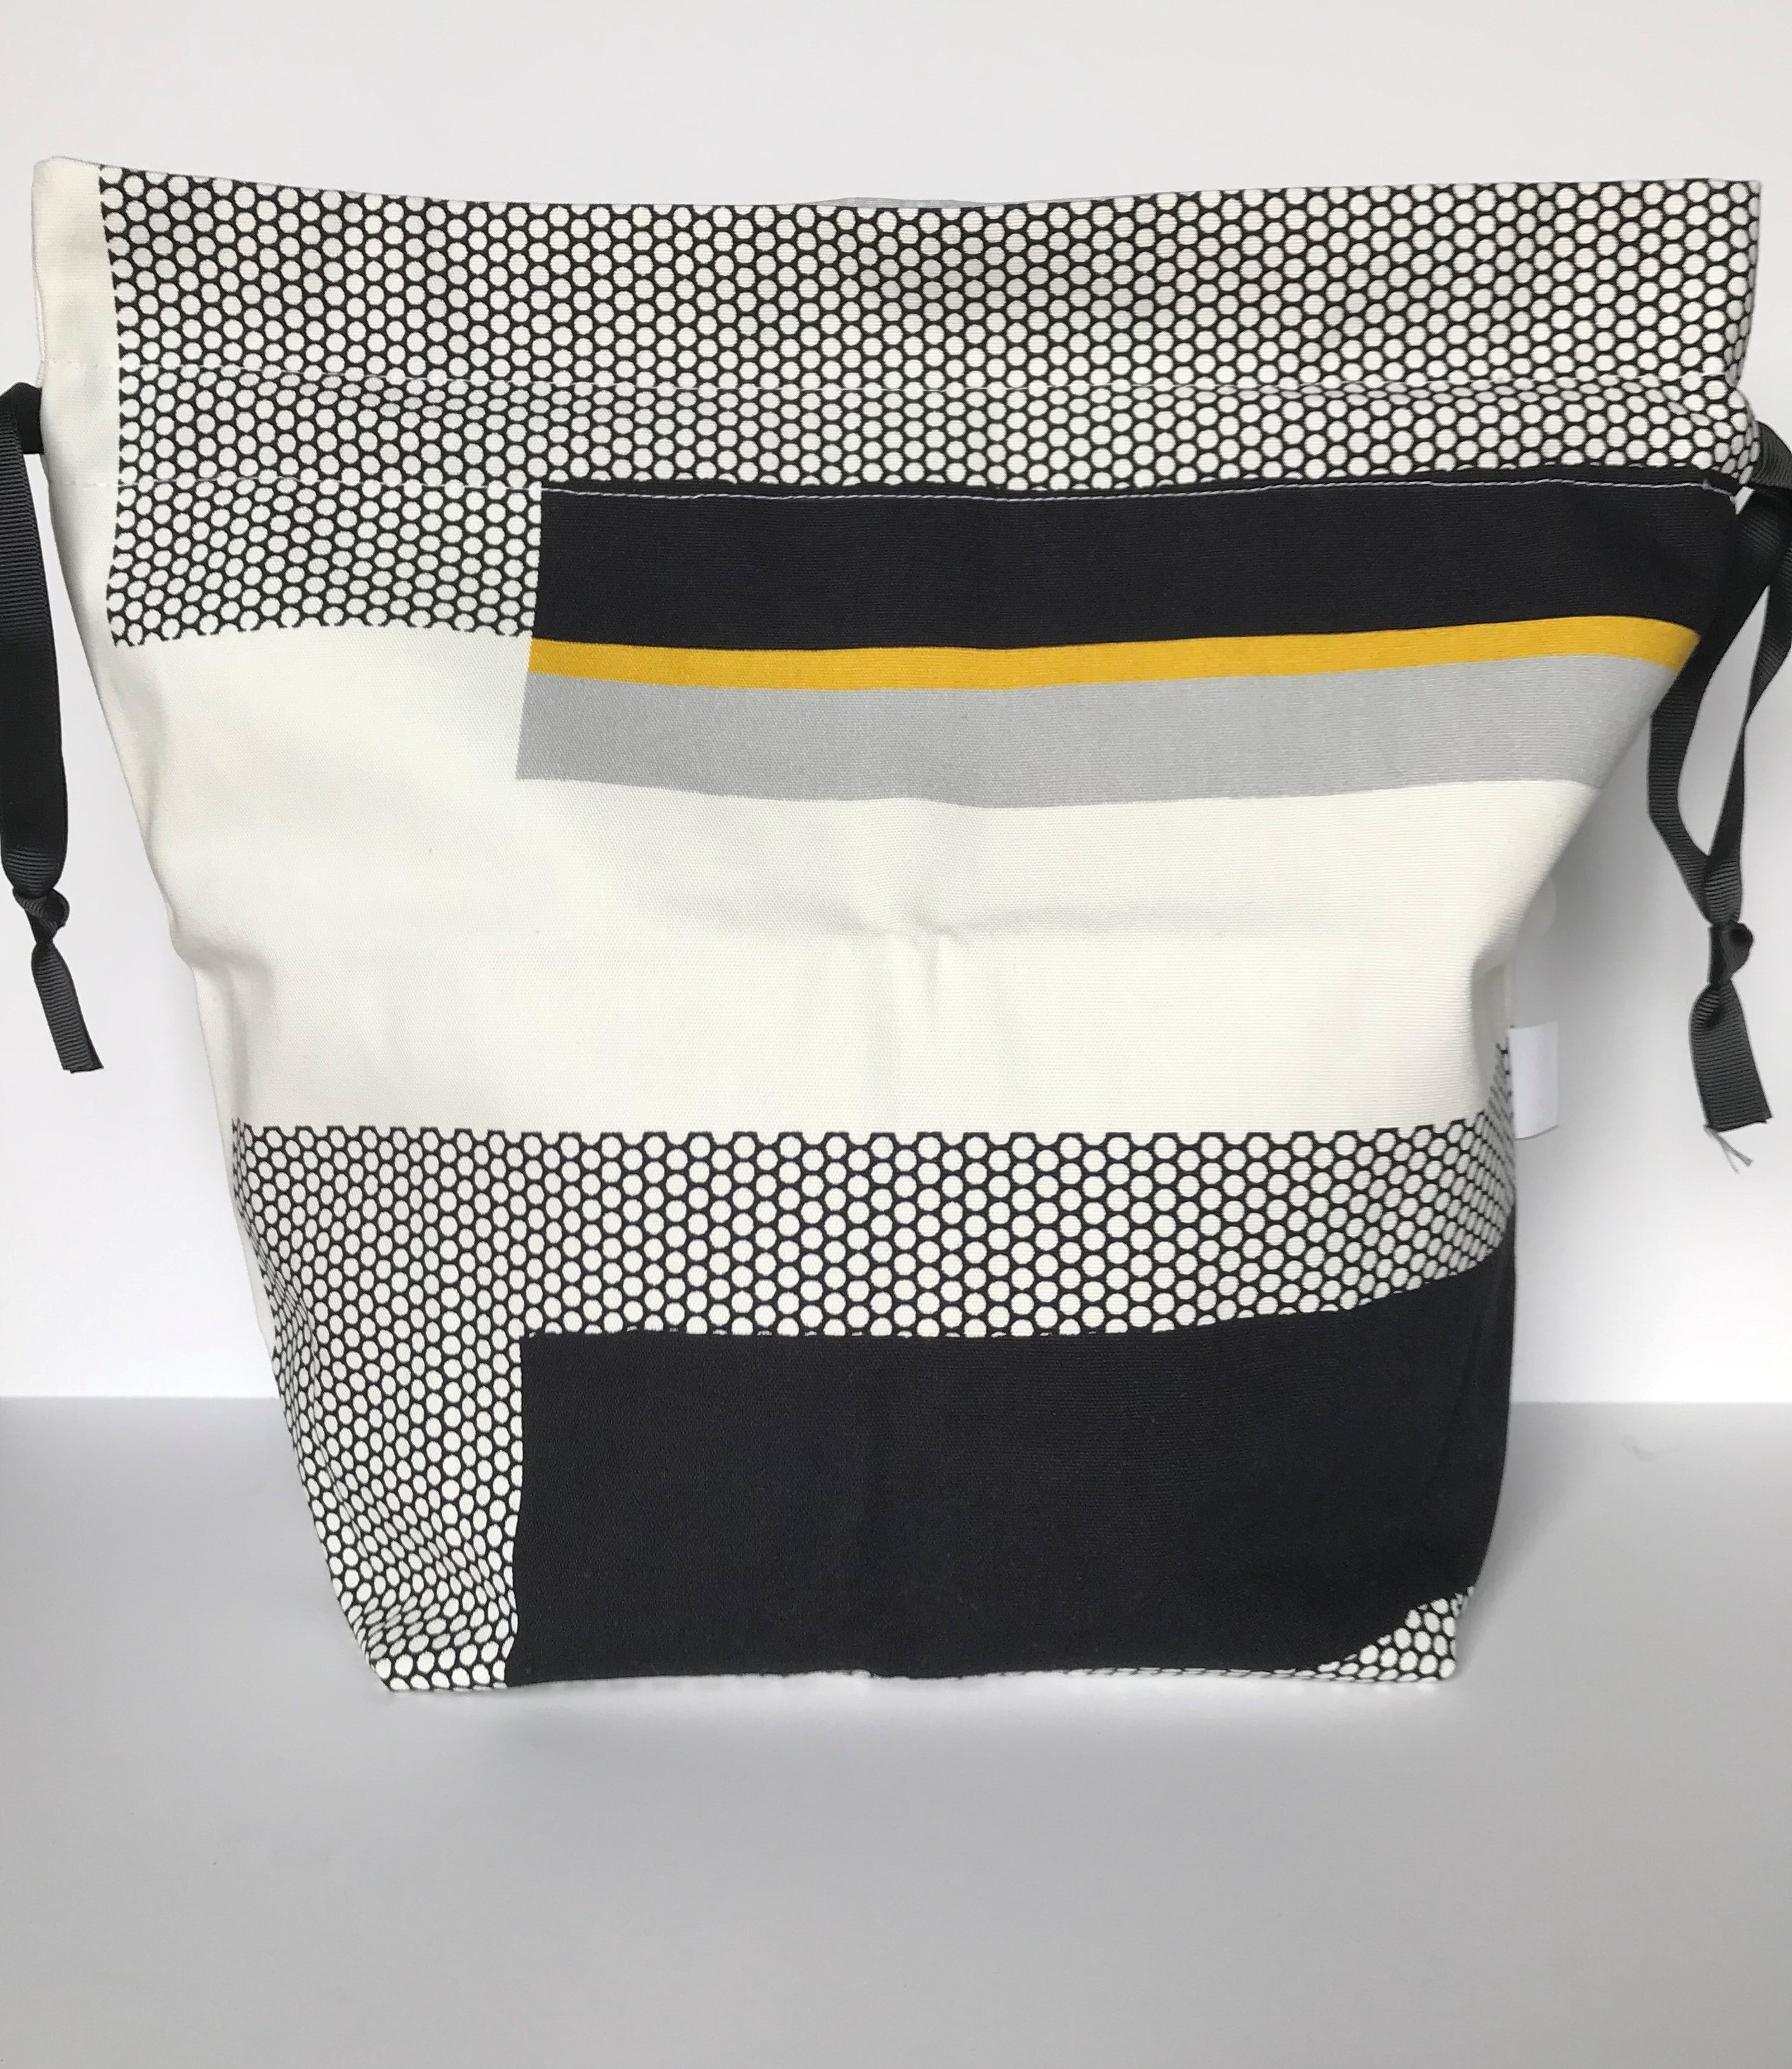 Large Drawstring Bag - white/black/yellow geometric